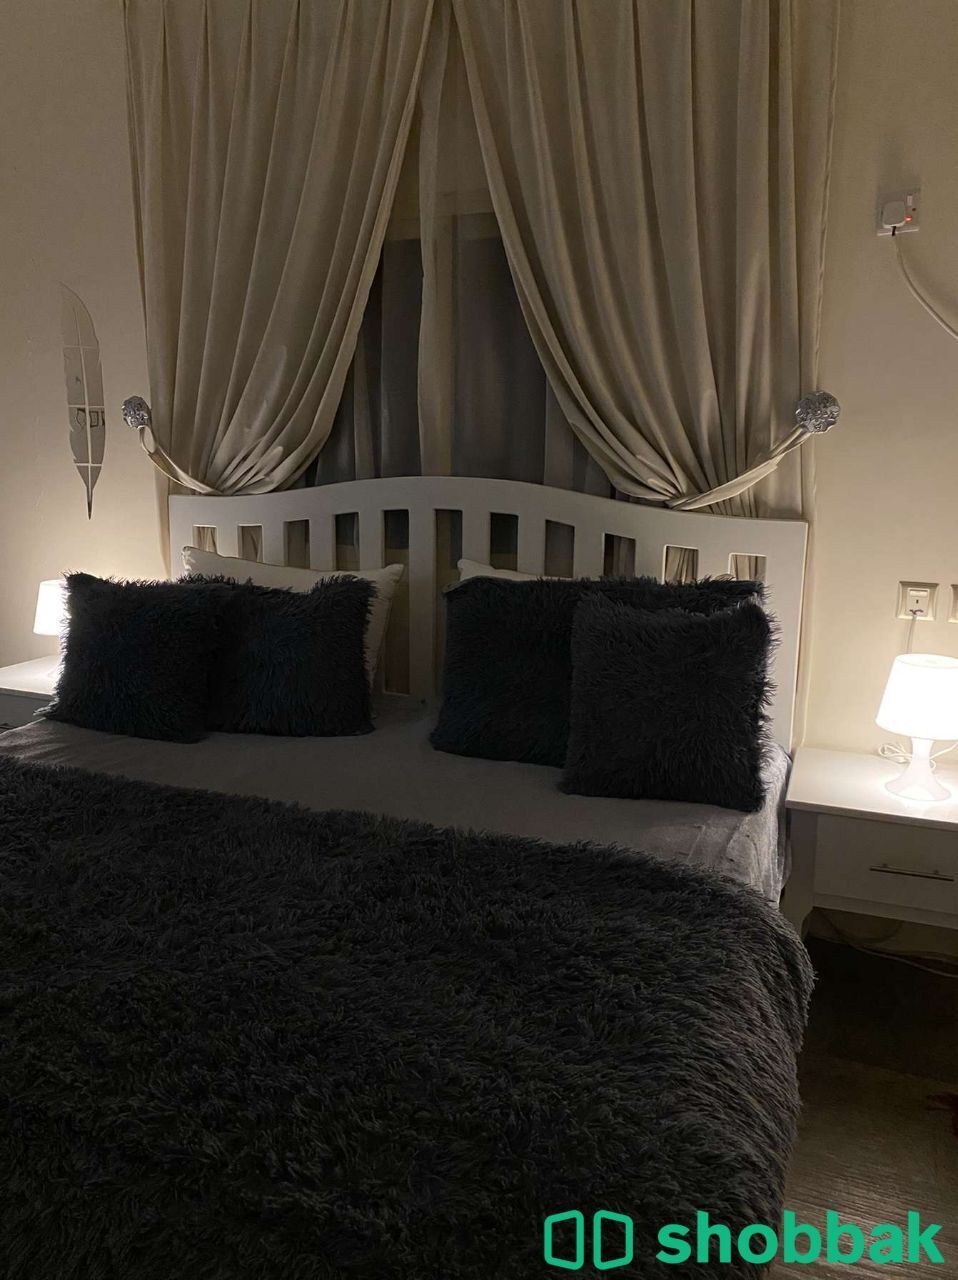 غرفة نوم كاملة للبيع  Shobbak Saudi Arabia